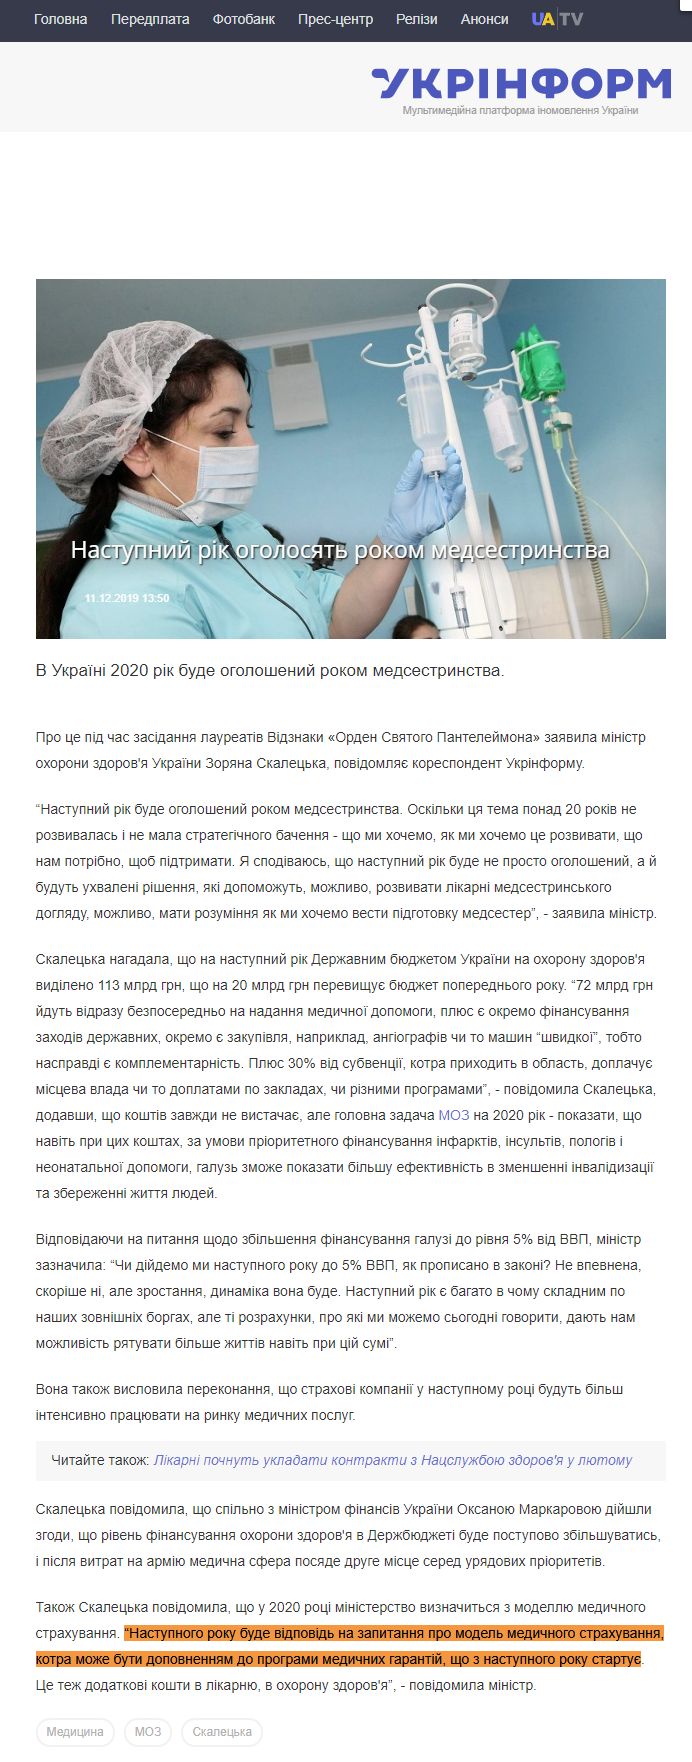 https://www.ukrinform.ua/rubric-society/2835783-nastupnij-rik-ogolosat-rokom-medsestrinstva.html